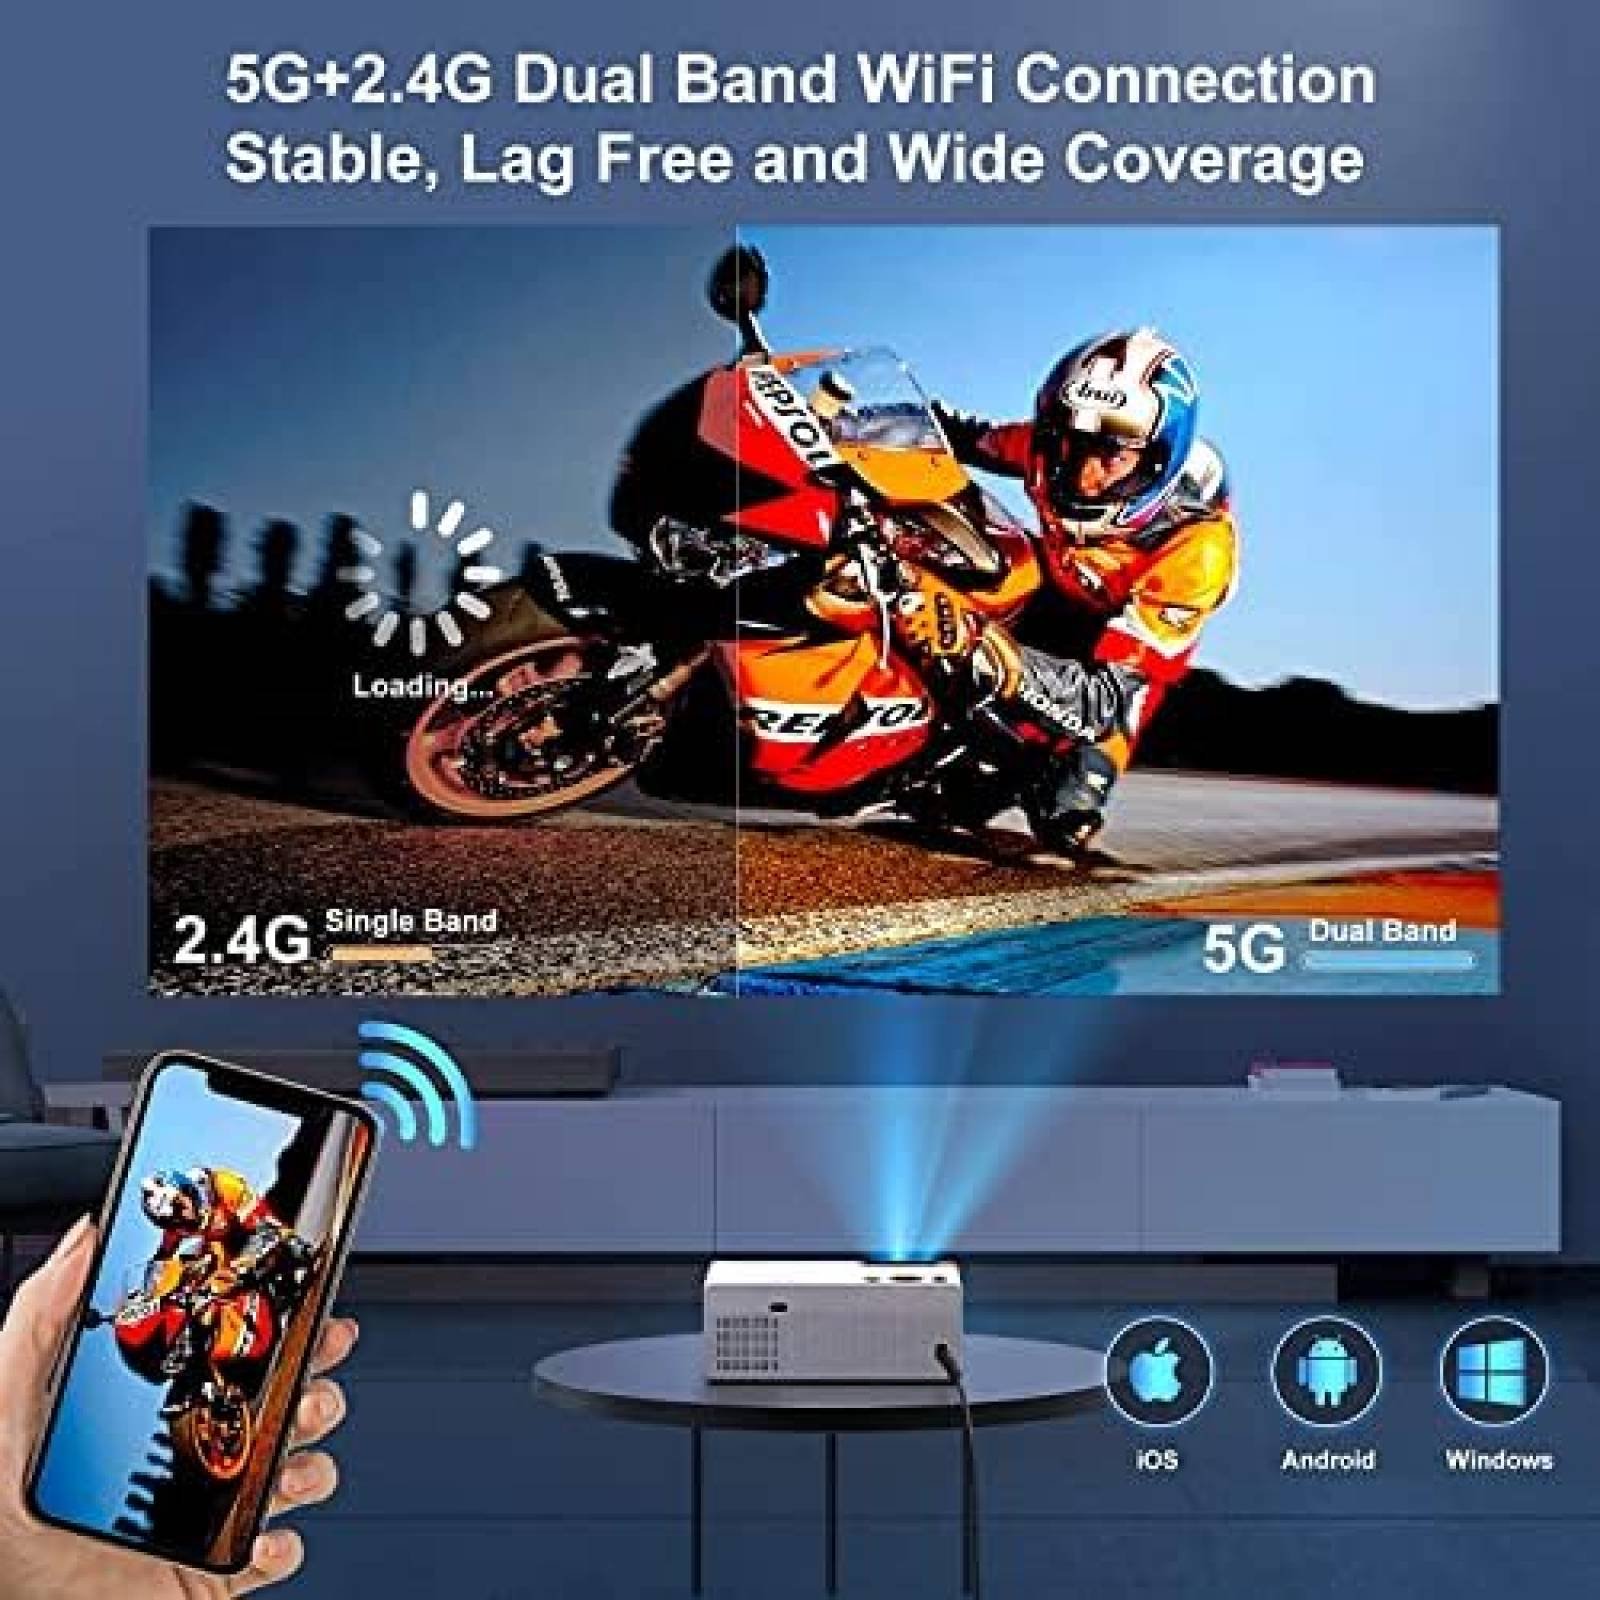 Proyector WiFi 5G nativo 1080p Bluetooth Smart Projectores 4K compatibles,  10,000 lúmenes altos y pantalla de 300 pulgadas, proyector de cine para